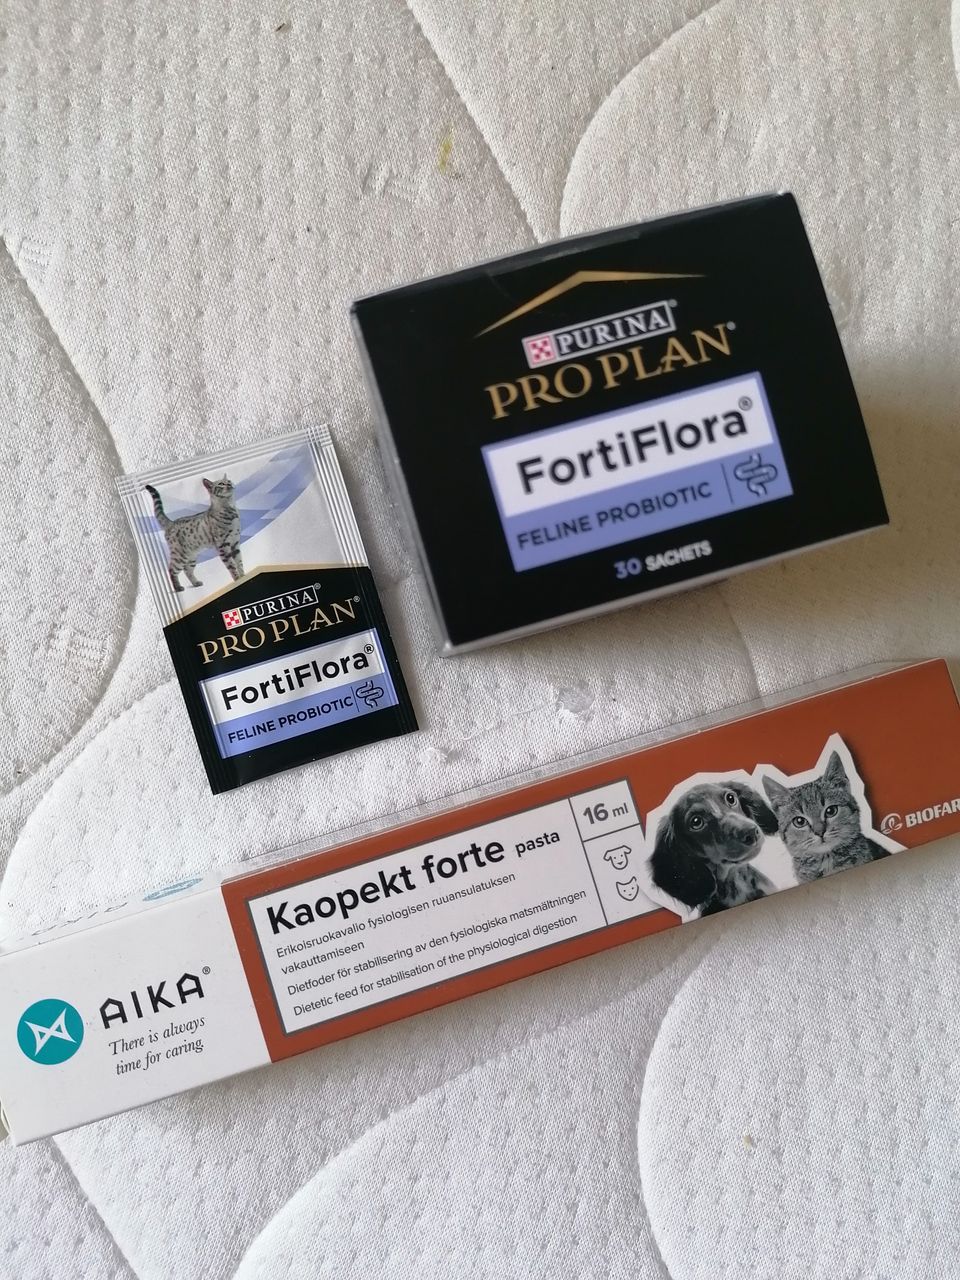 Pro Plan Fortiflora & Aika Kaopekt forte kissalle/koiralle